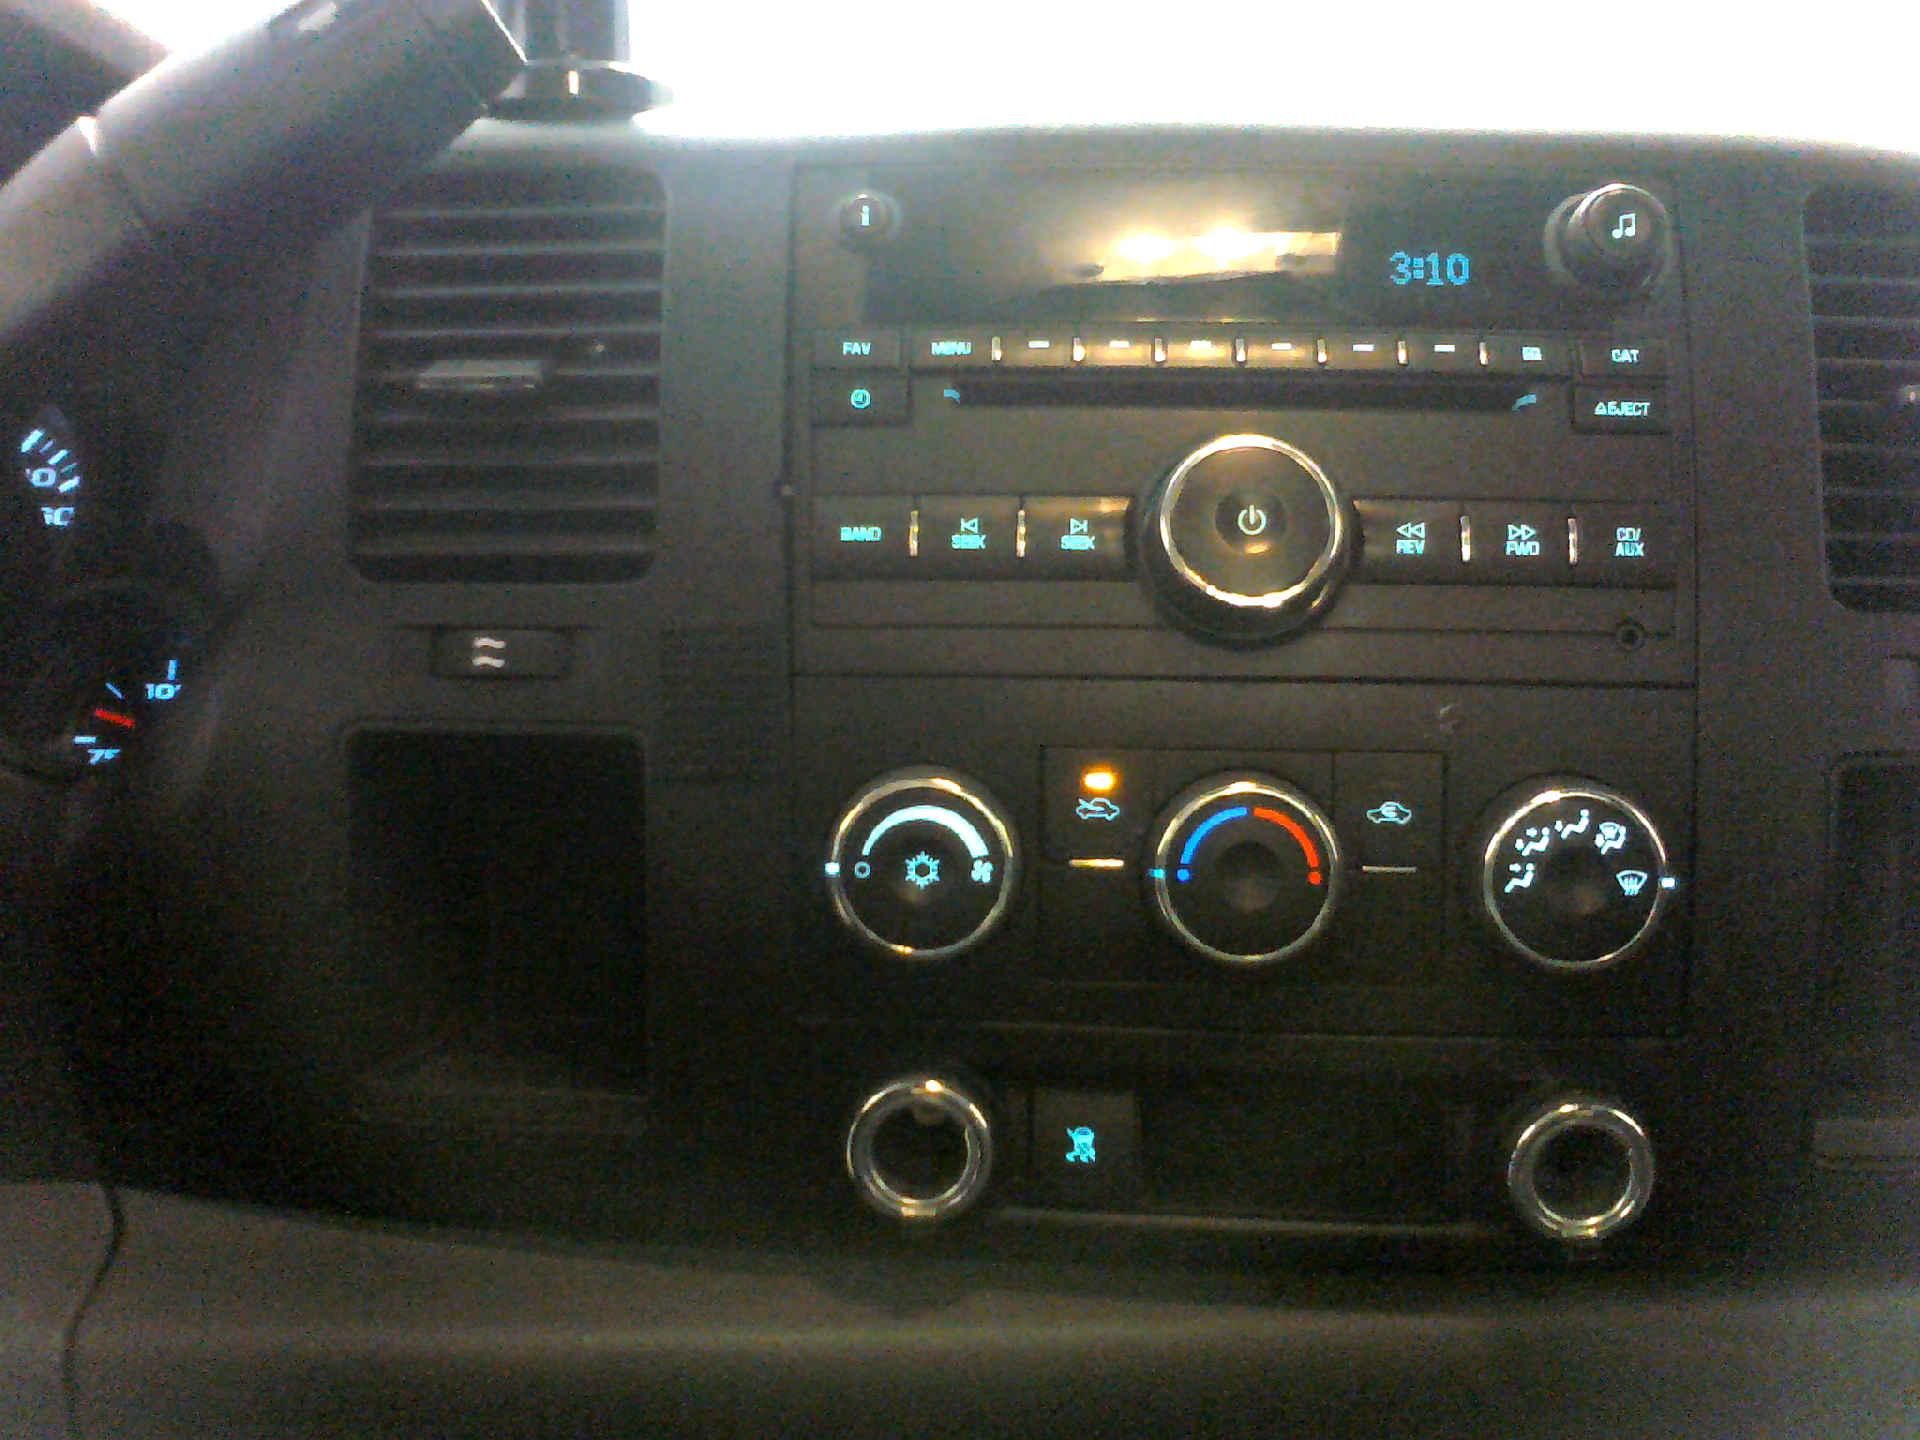 2010 CHEVROLET SILVERADO 1500 EXTENDED CAB 4WD 4.8L V8 OHV 16V AUTOMATIC SN:1GCSKPEA6AZ124803 - Image 8 of 9